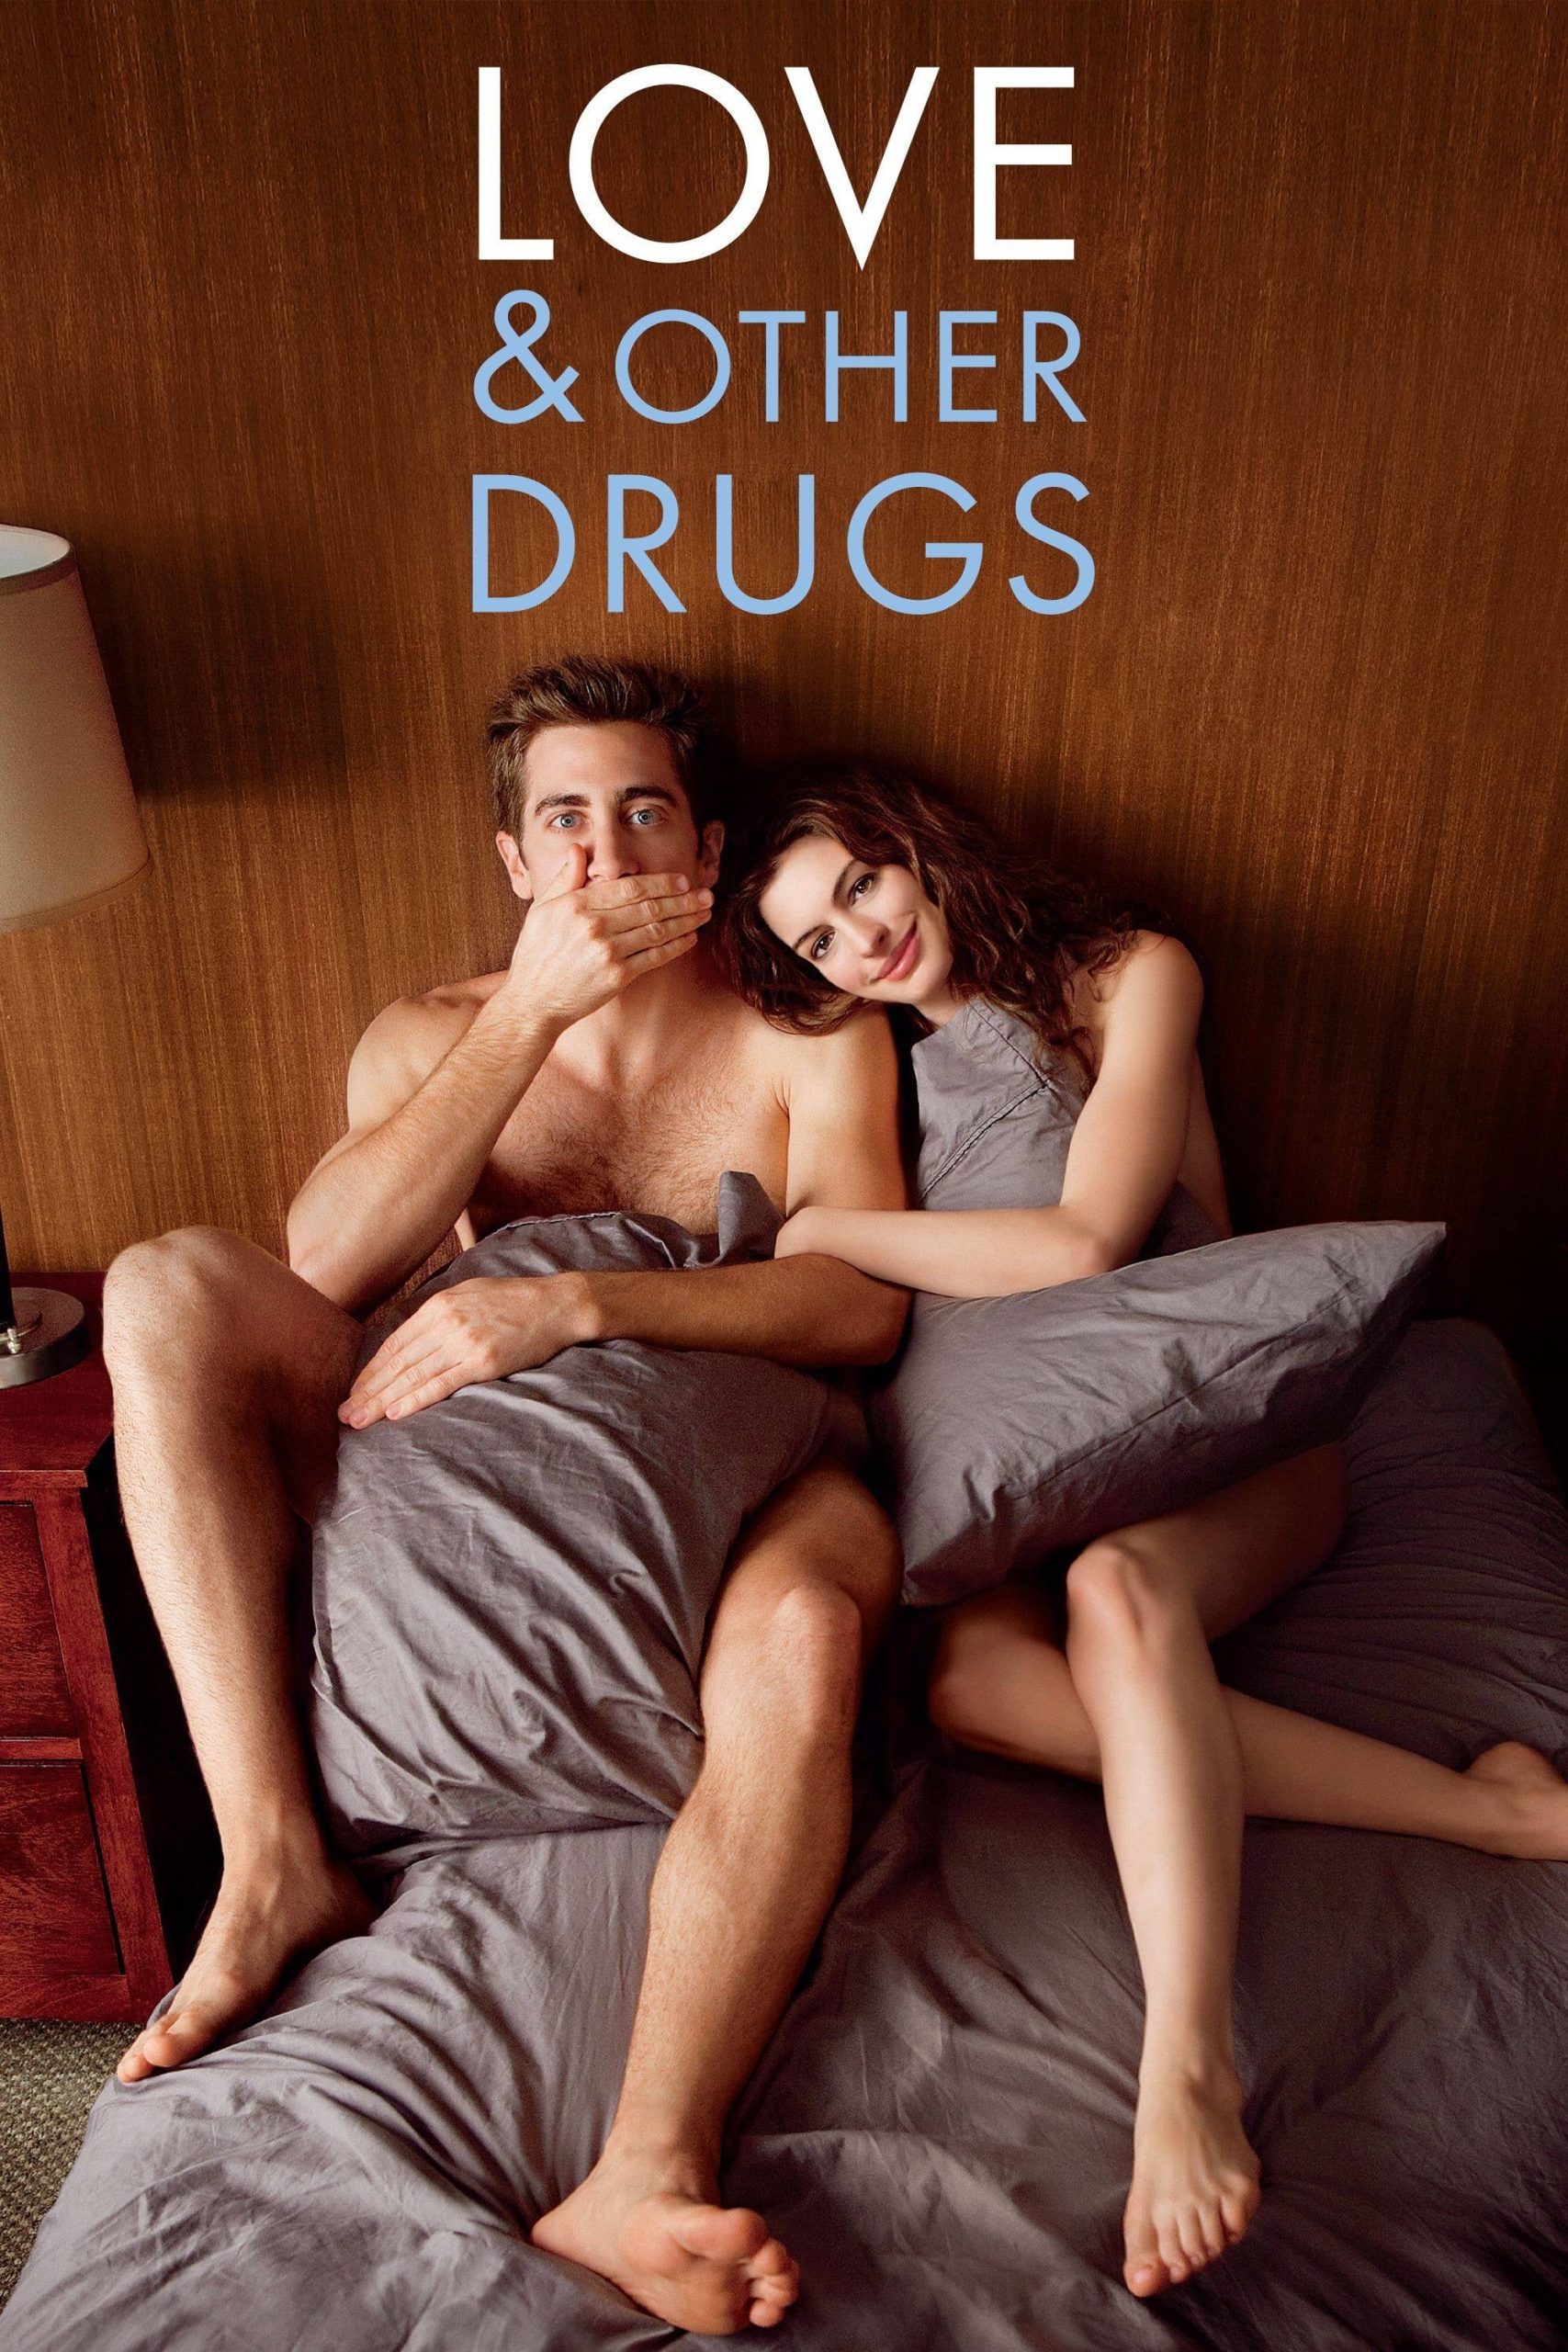 ดูหนังออนไลน์ฟรี Love & Other Drugs ยาวิเศษที่ไม่อาจรักษารัก